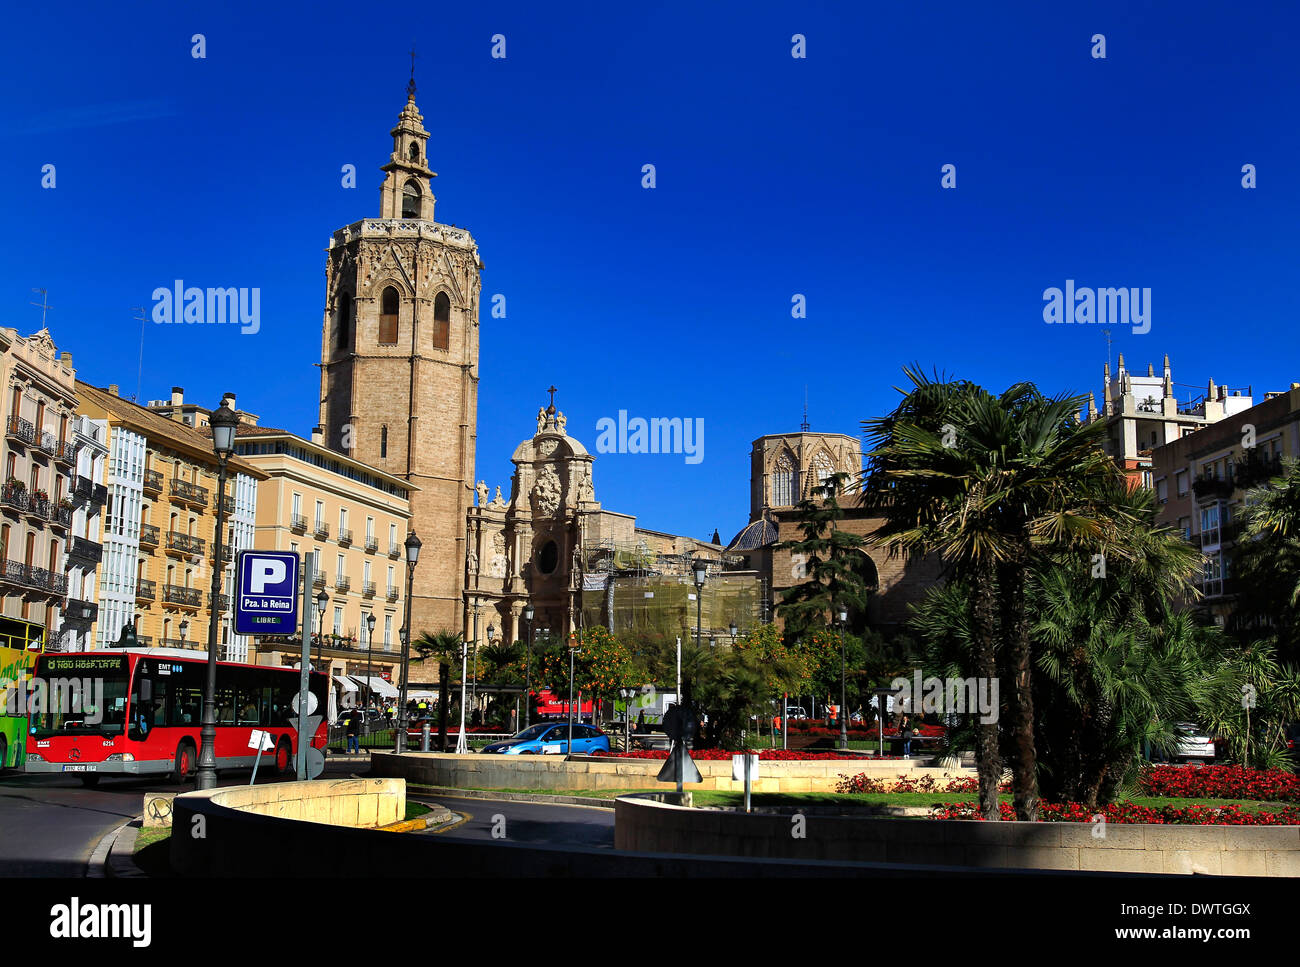 Une vue générale de la Plaza de la Reina, Valence, Espagne, le 6 février 2014. Photo de Sarah Sarah/Ansell Ansell la photographie. Banque D'Images